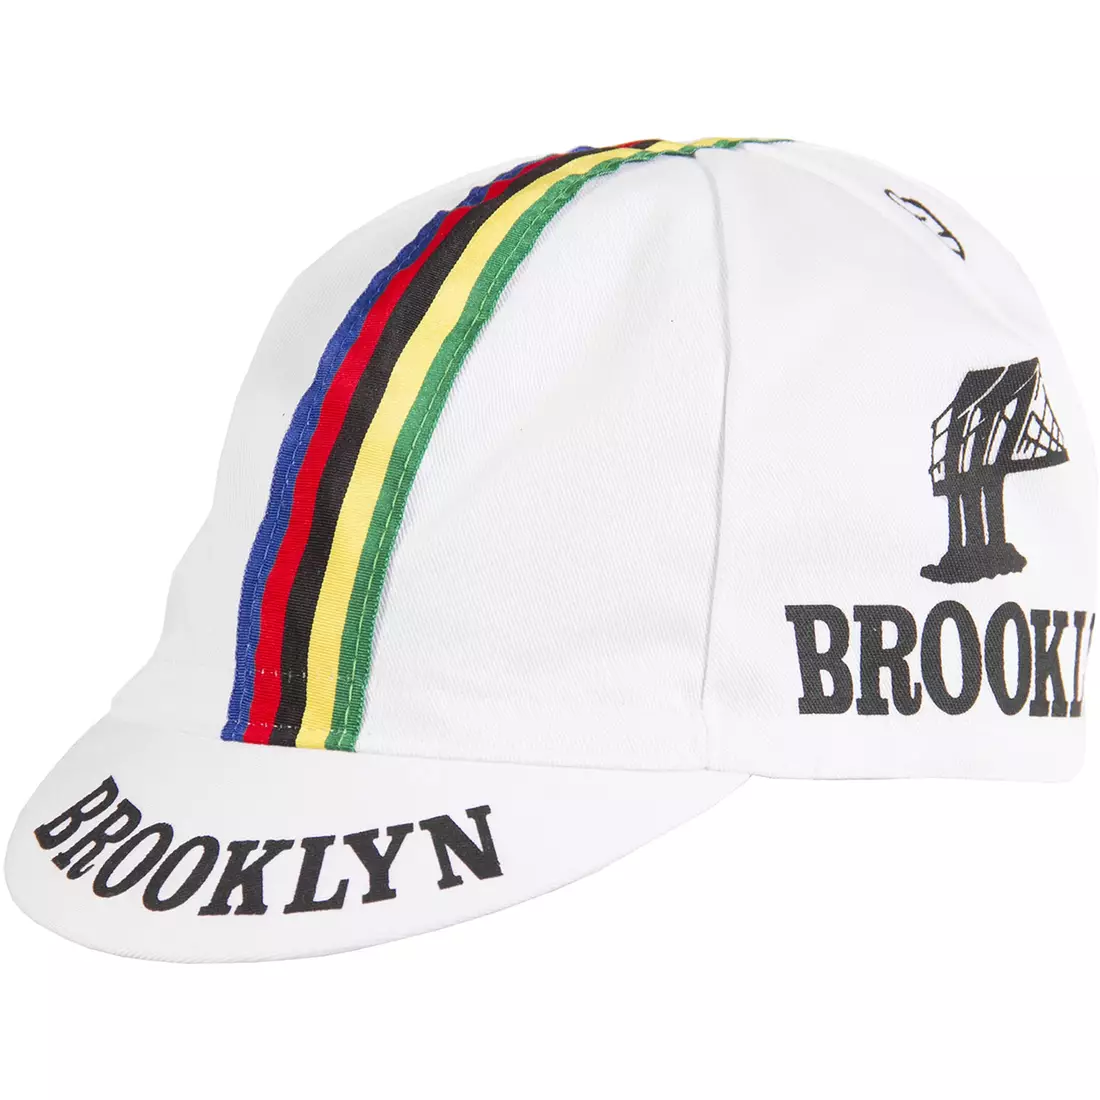 GIORDANA SS18 kerékpáros sapka - Brooklyn - Fehér csíkos szalaggal GI-S6-COCA-BROK-WHIT egy méret